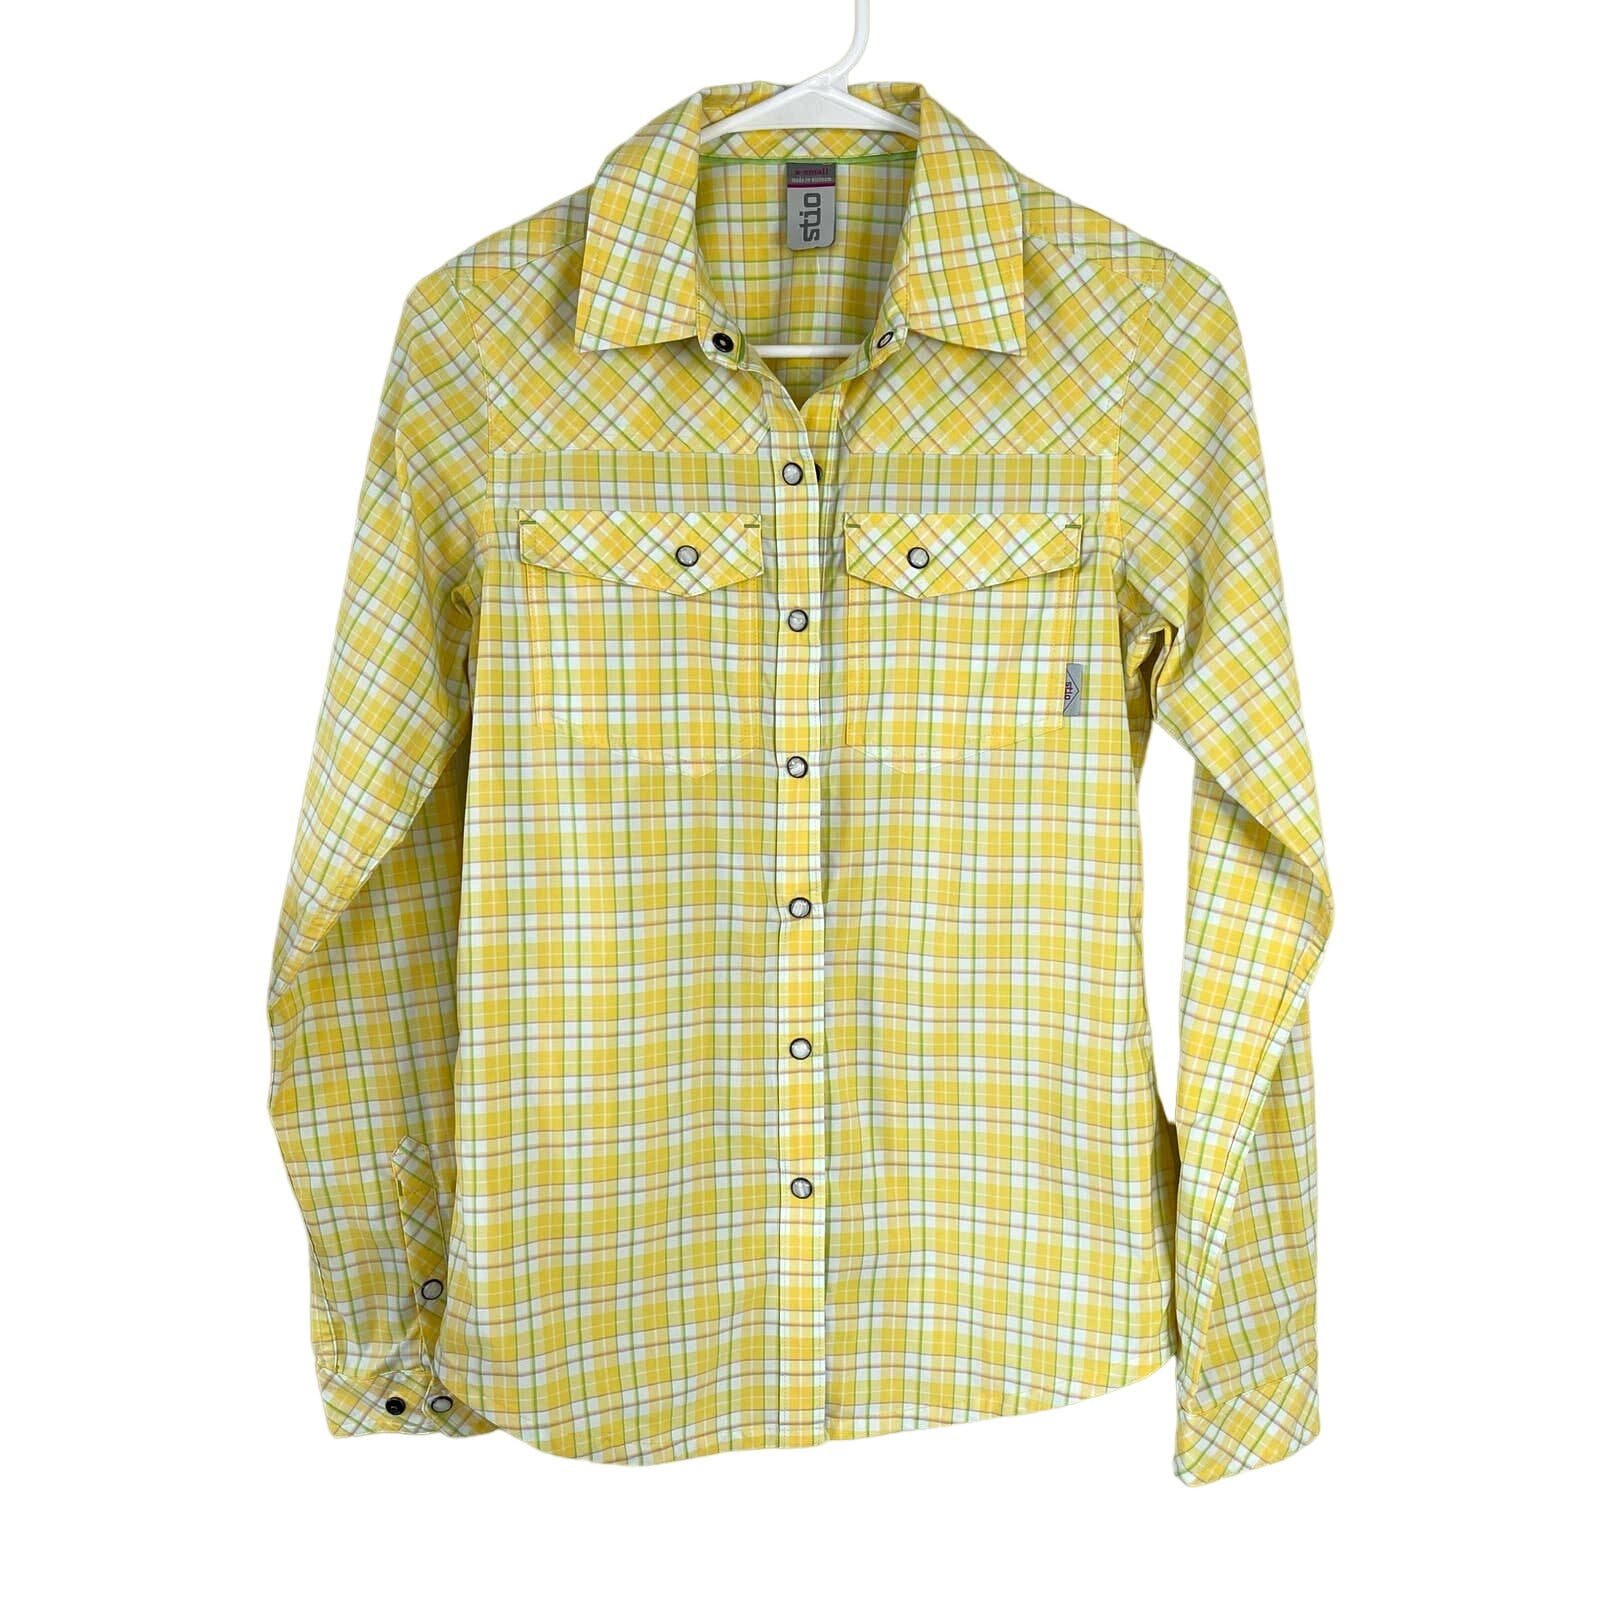 Stylish NWOT Stio Yellow Plaid Eddy Long Sleeve Shirt (